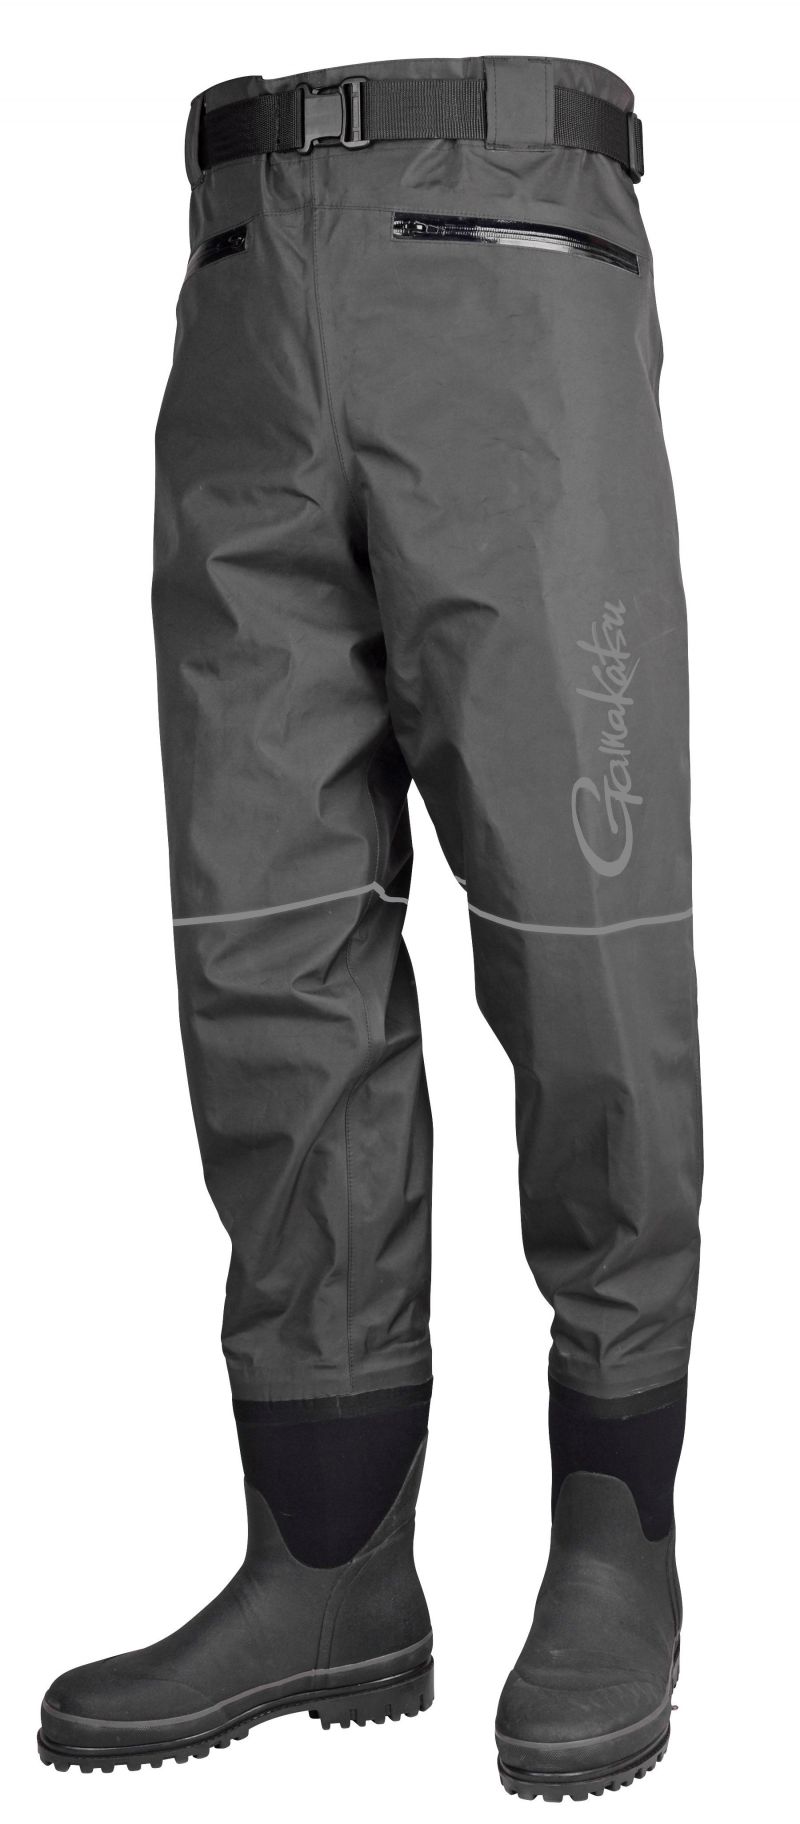 Gamakatsu G-Breathable Pants zwart - grijs waadpak M46-m47 Xx-large